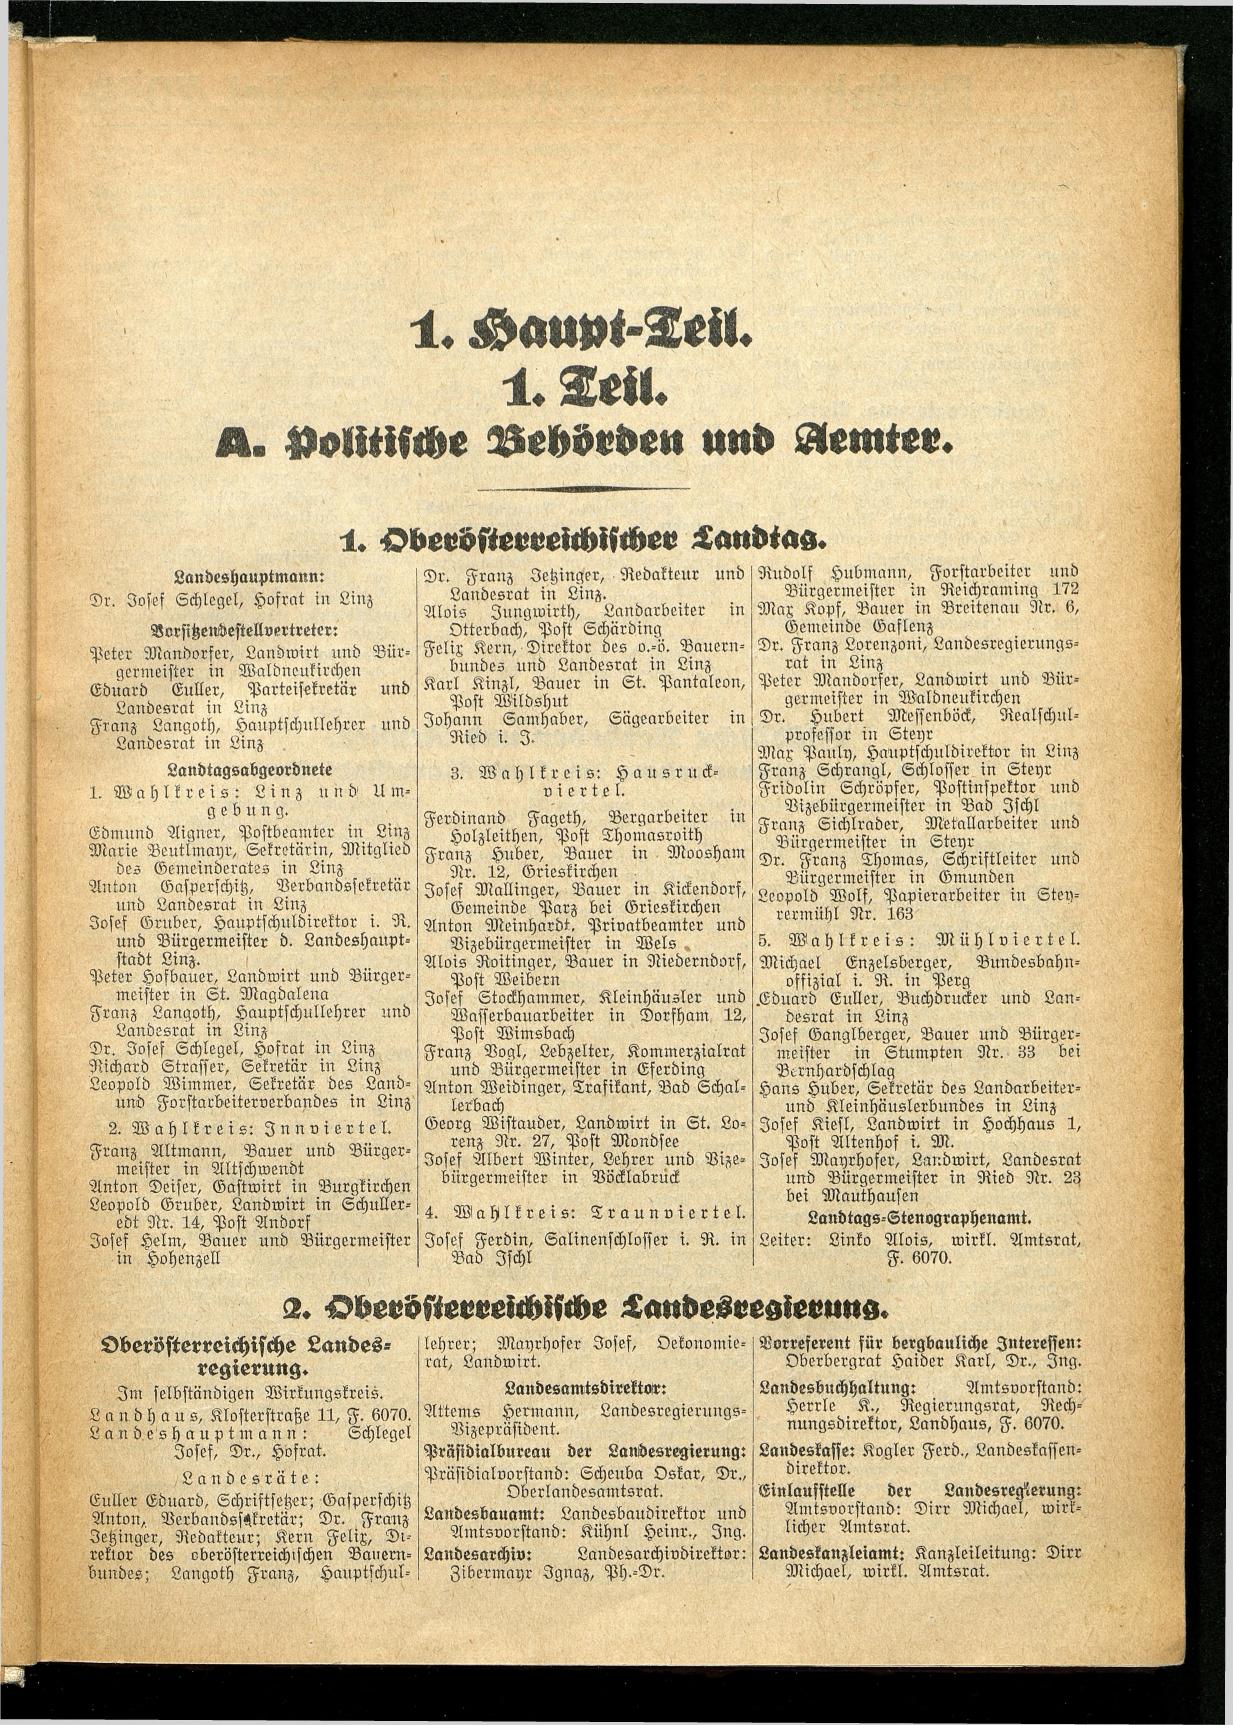 Amtliches Linzer Adreßbuch 1934 - Page 7